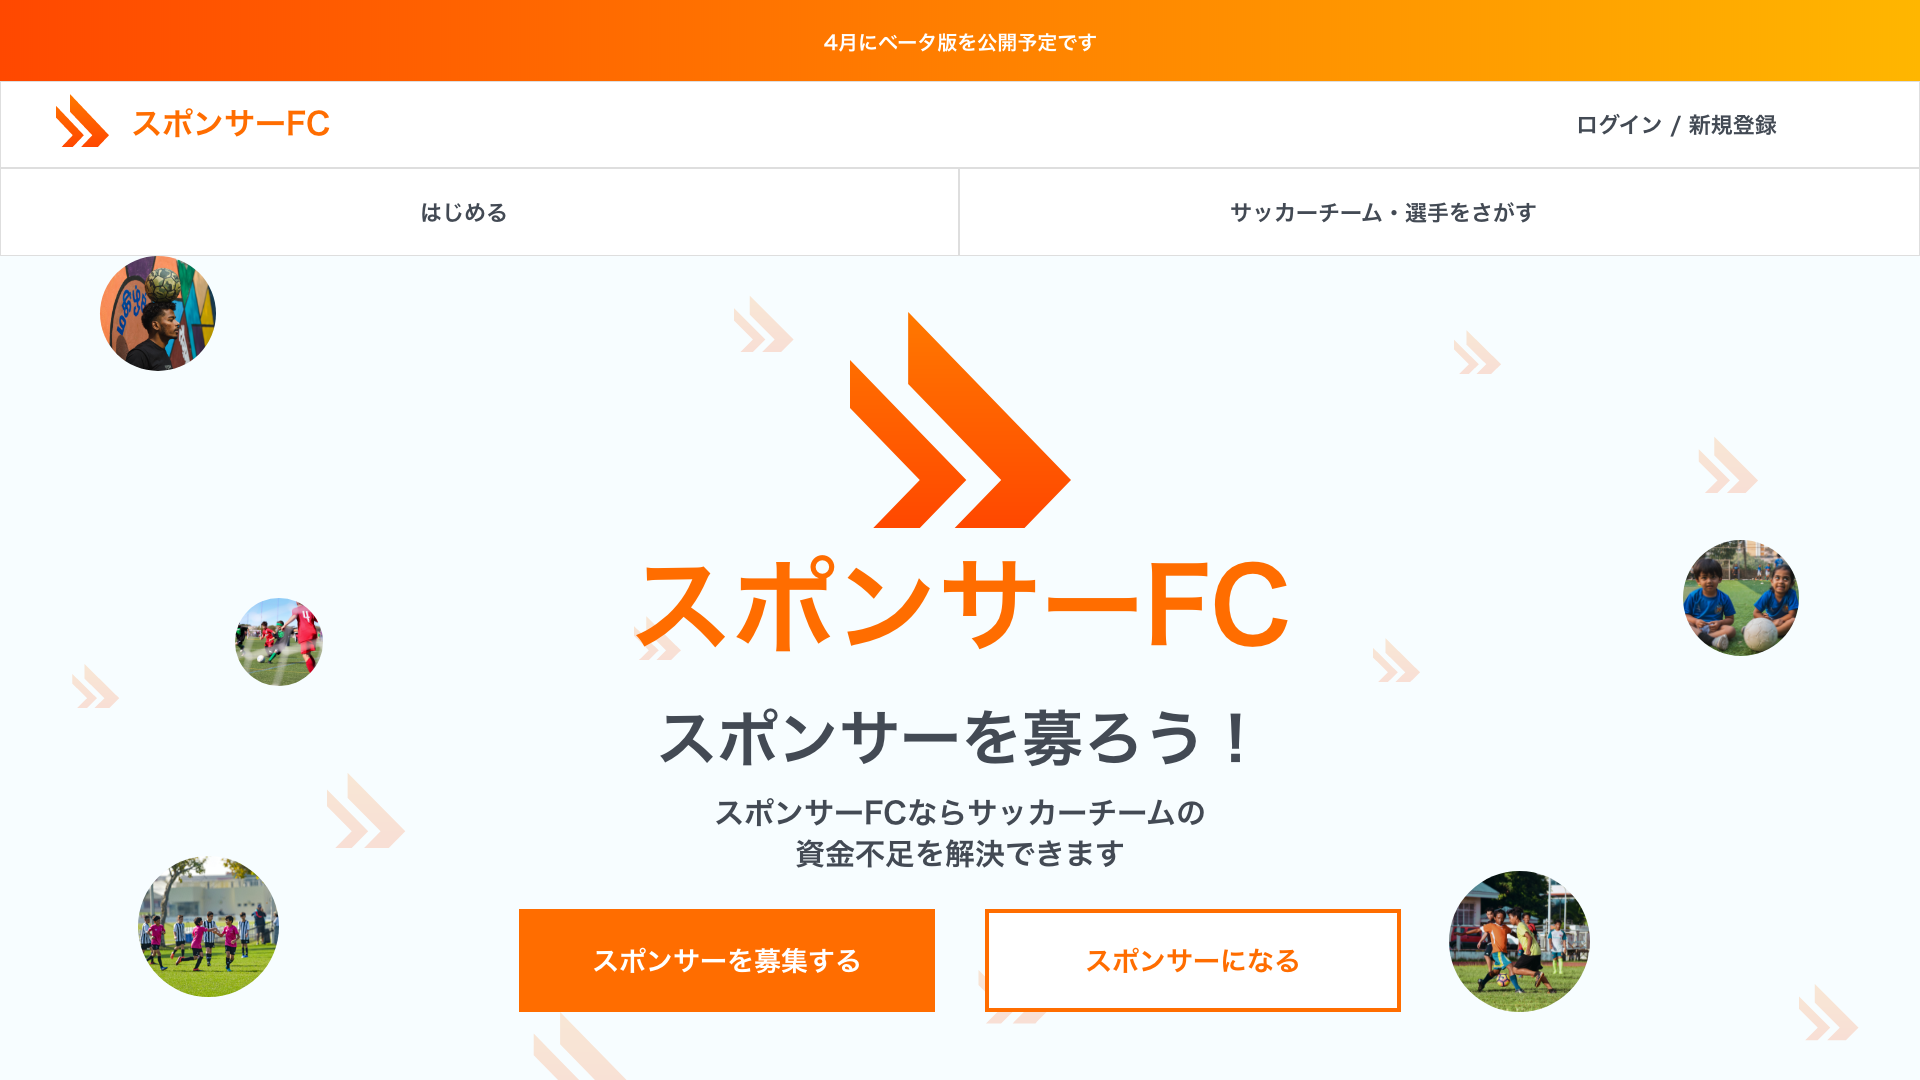 サッカーチーム 選手がスポンサーを募る プレイヤーとスポンサーのマッチングプラットフォーム スポンサーfc の告知 Kirakuna 株式会社のプレスリリース